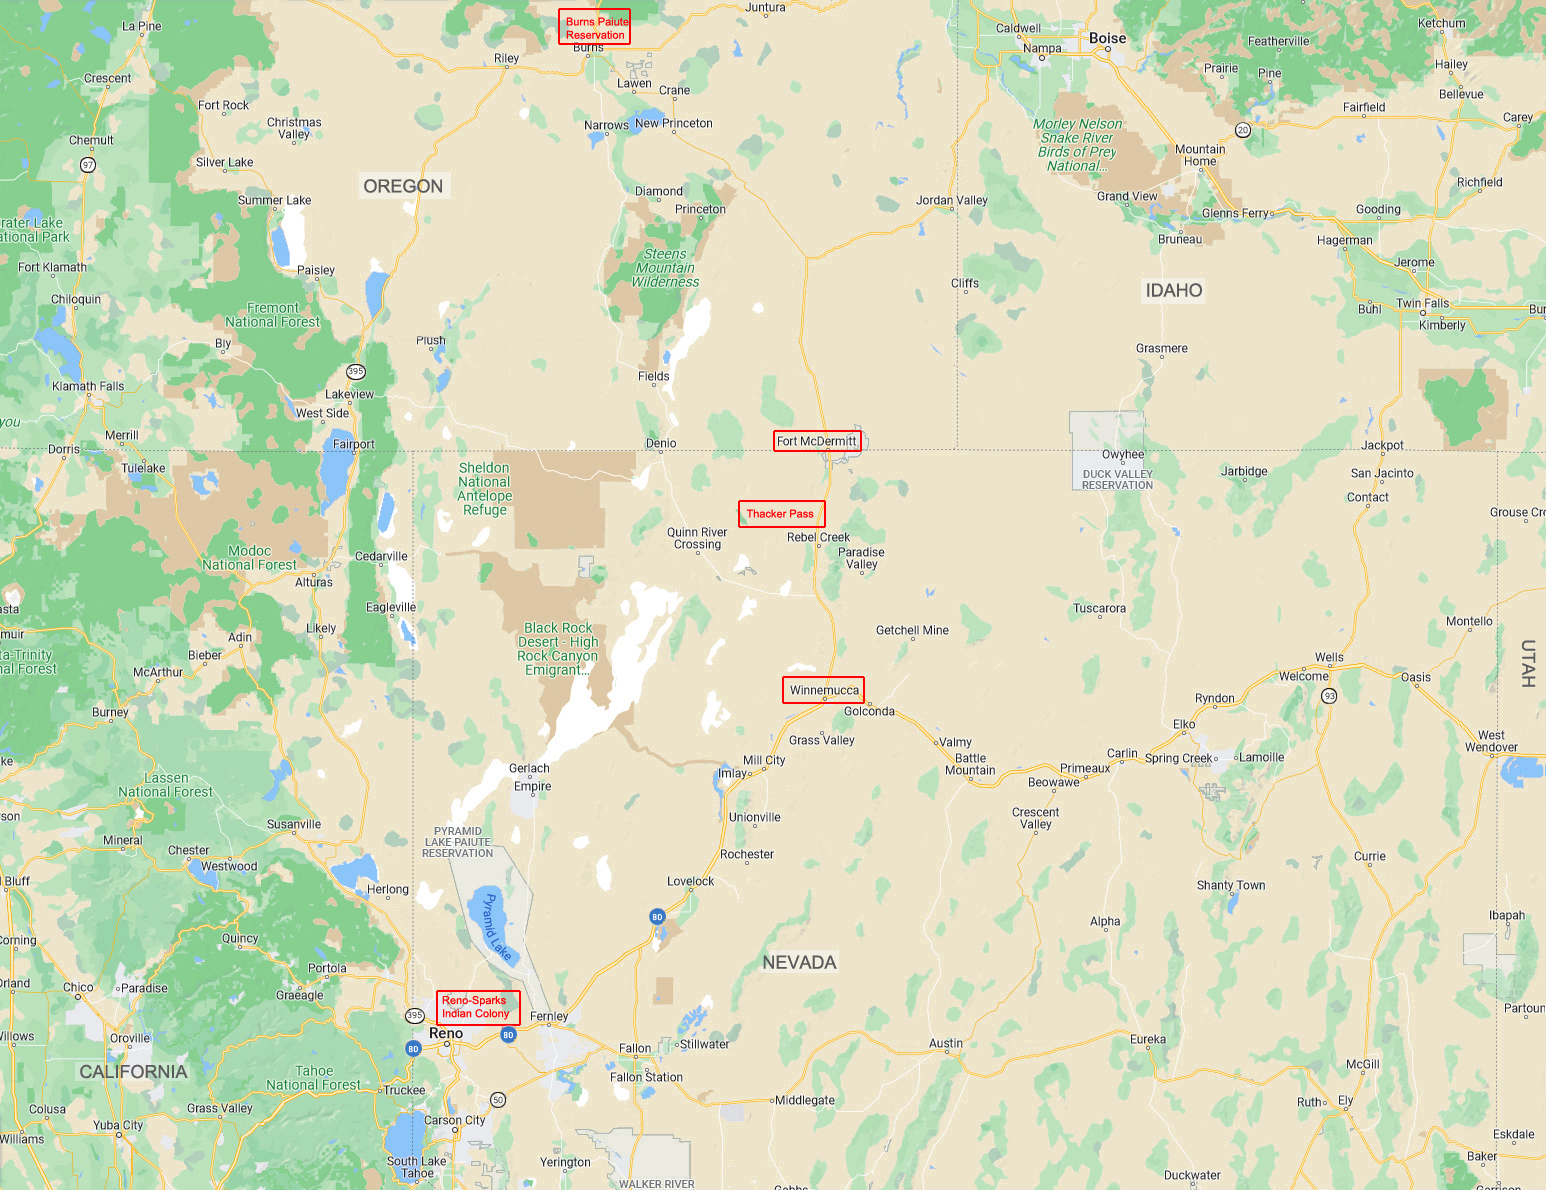 Nord du Nevada, sud de l'Oregon
Tribus impliquées dans l'action en justice contre le projet de mine de lithium à Thacker Pass
Keywords: Thacker Pass;lithium;lithium americas;paiutes contre lithium;laver plus vert;shoshone contre lithium;luttes autochtones contre lithium